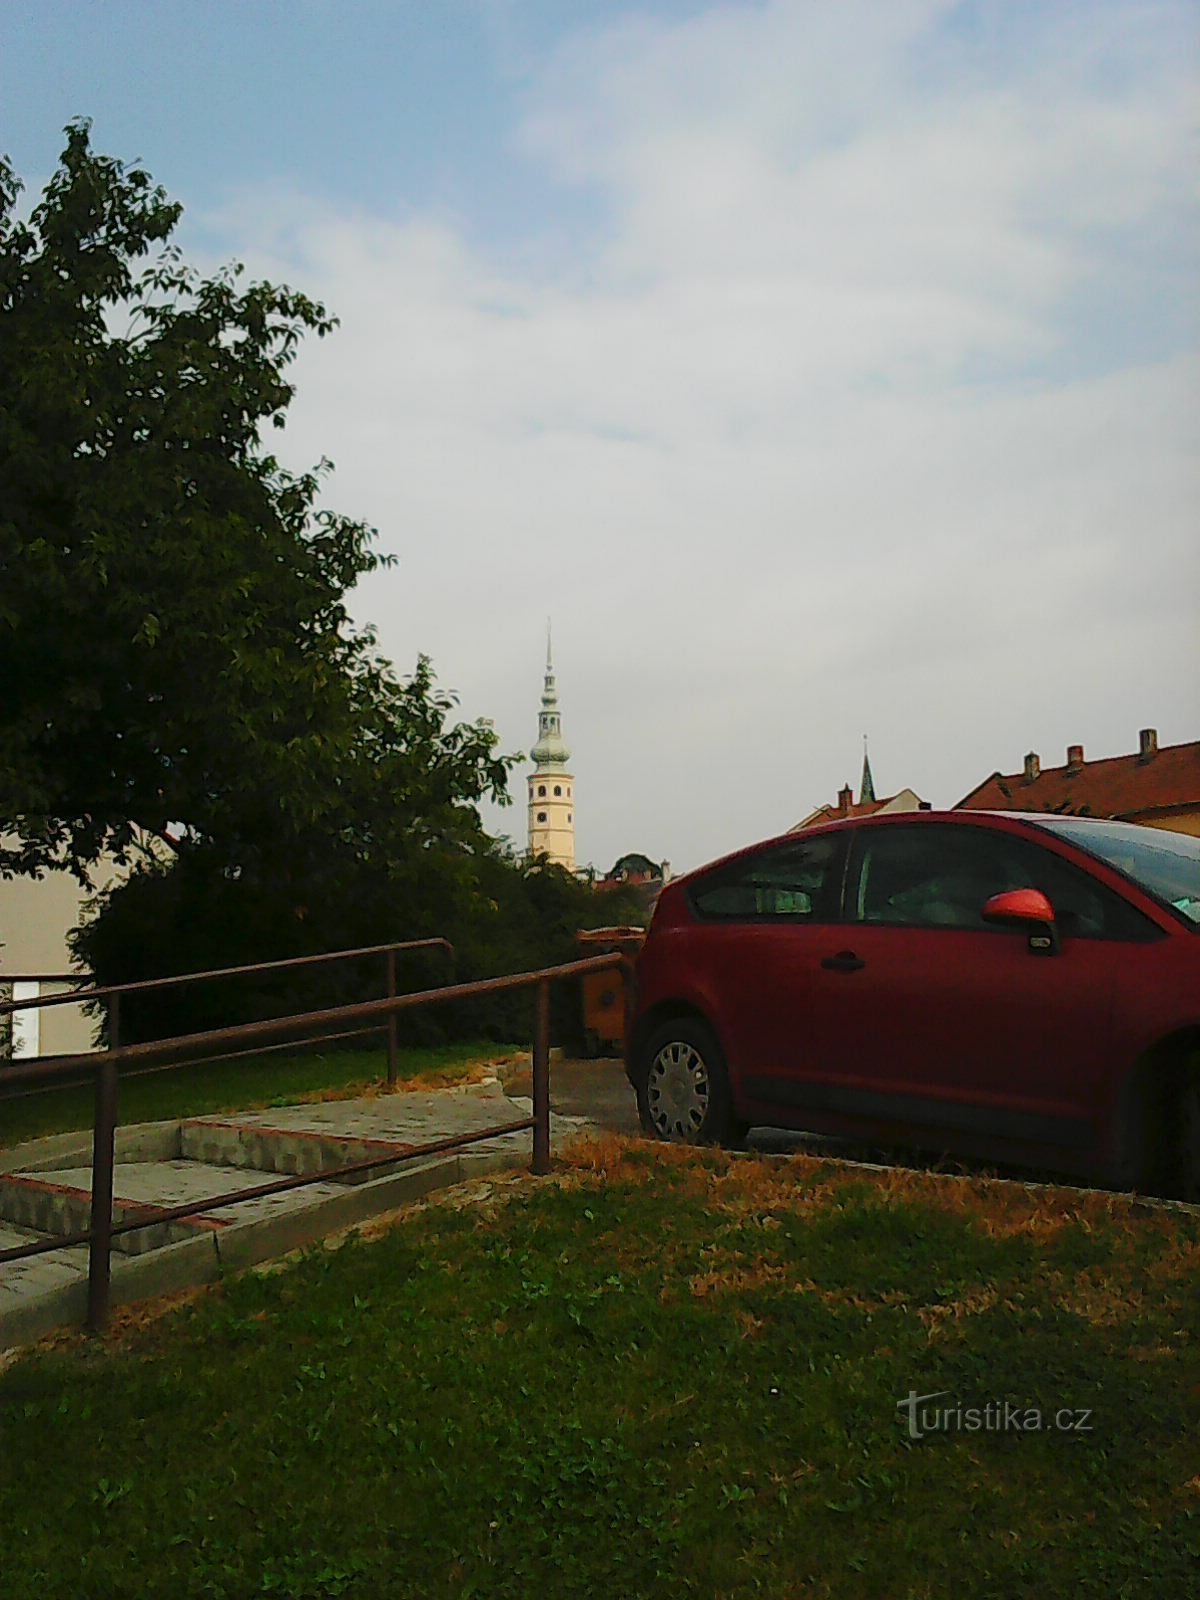 Ο πύργος του κάστρου Tovačovské ορατός από απόσταση - το κύριο σημείο αναφοράς μου :)